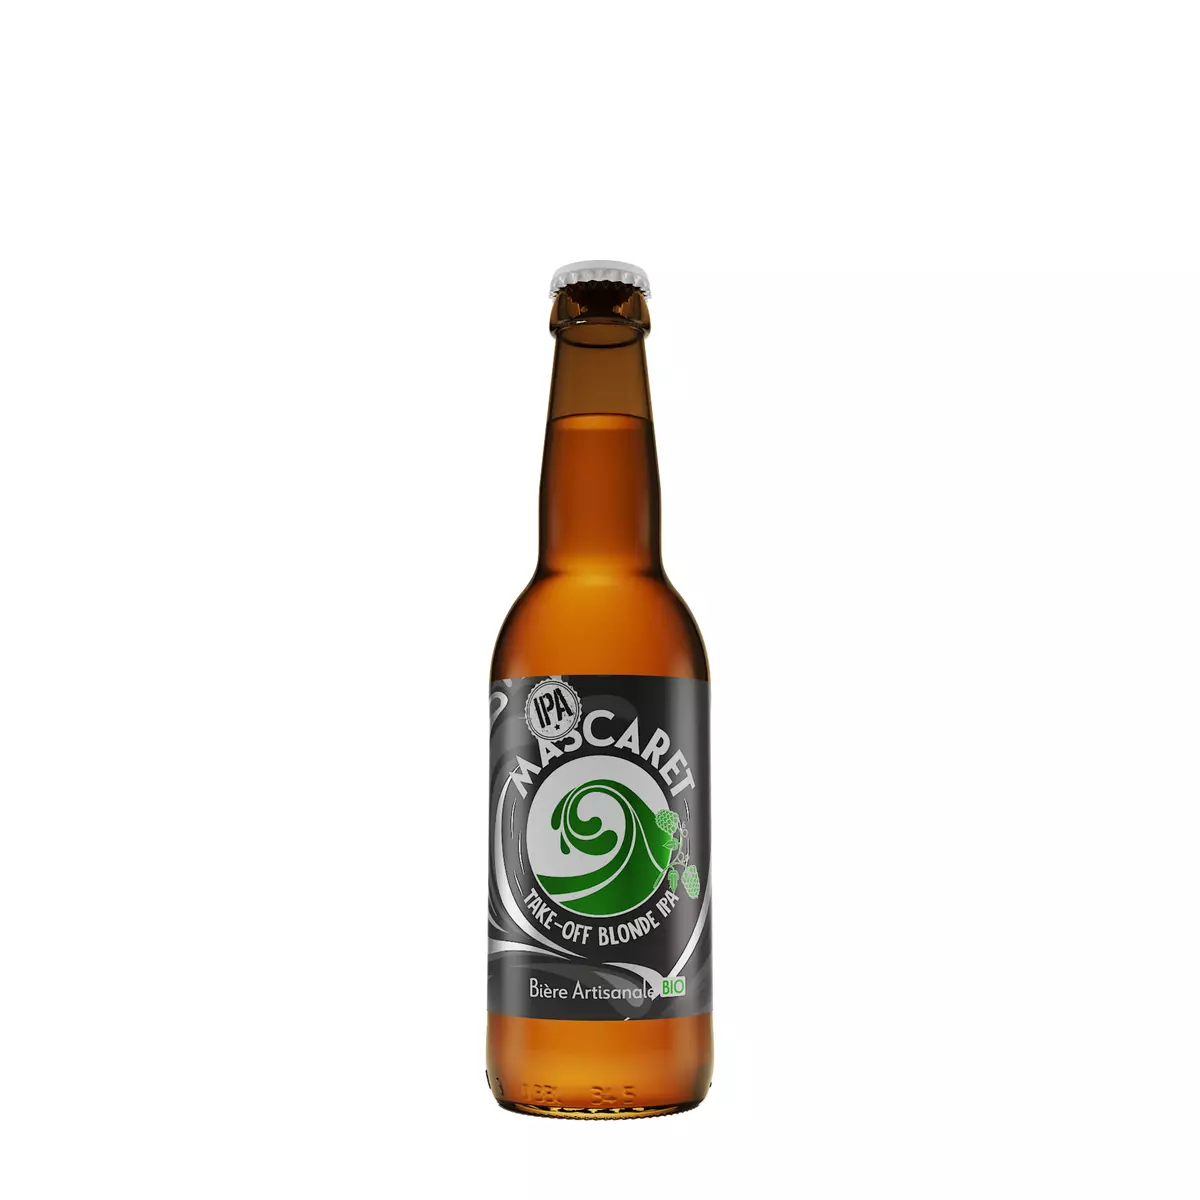 MASCARET Bière blonde artisanale bio IPA 6% bouteille 33cl